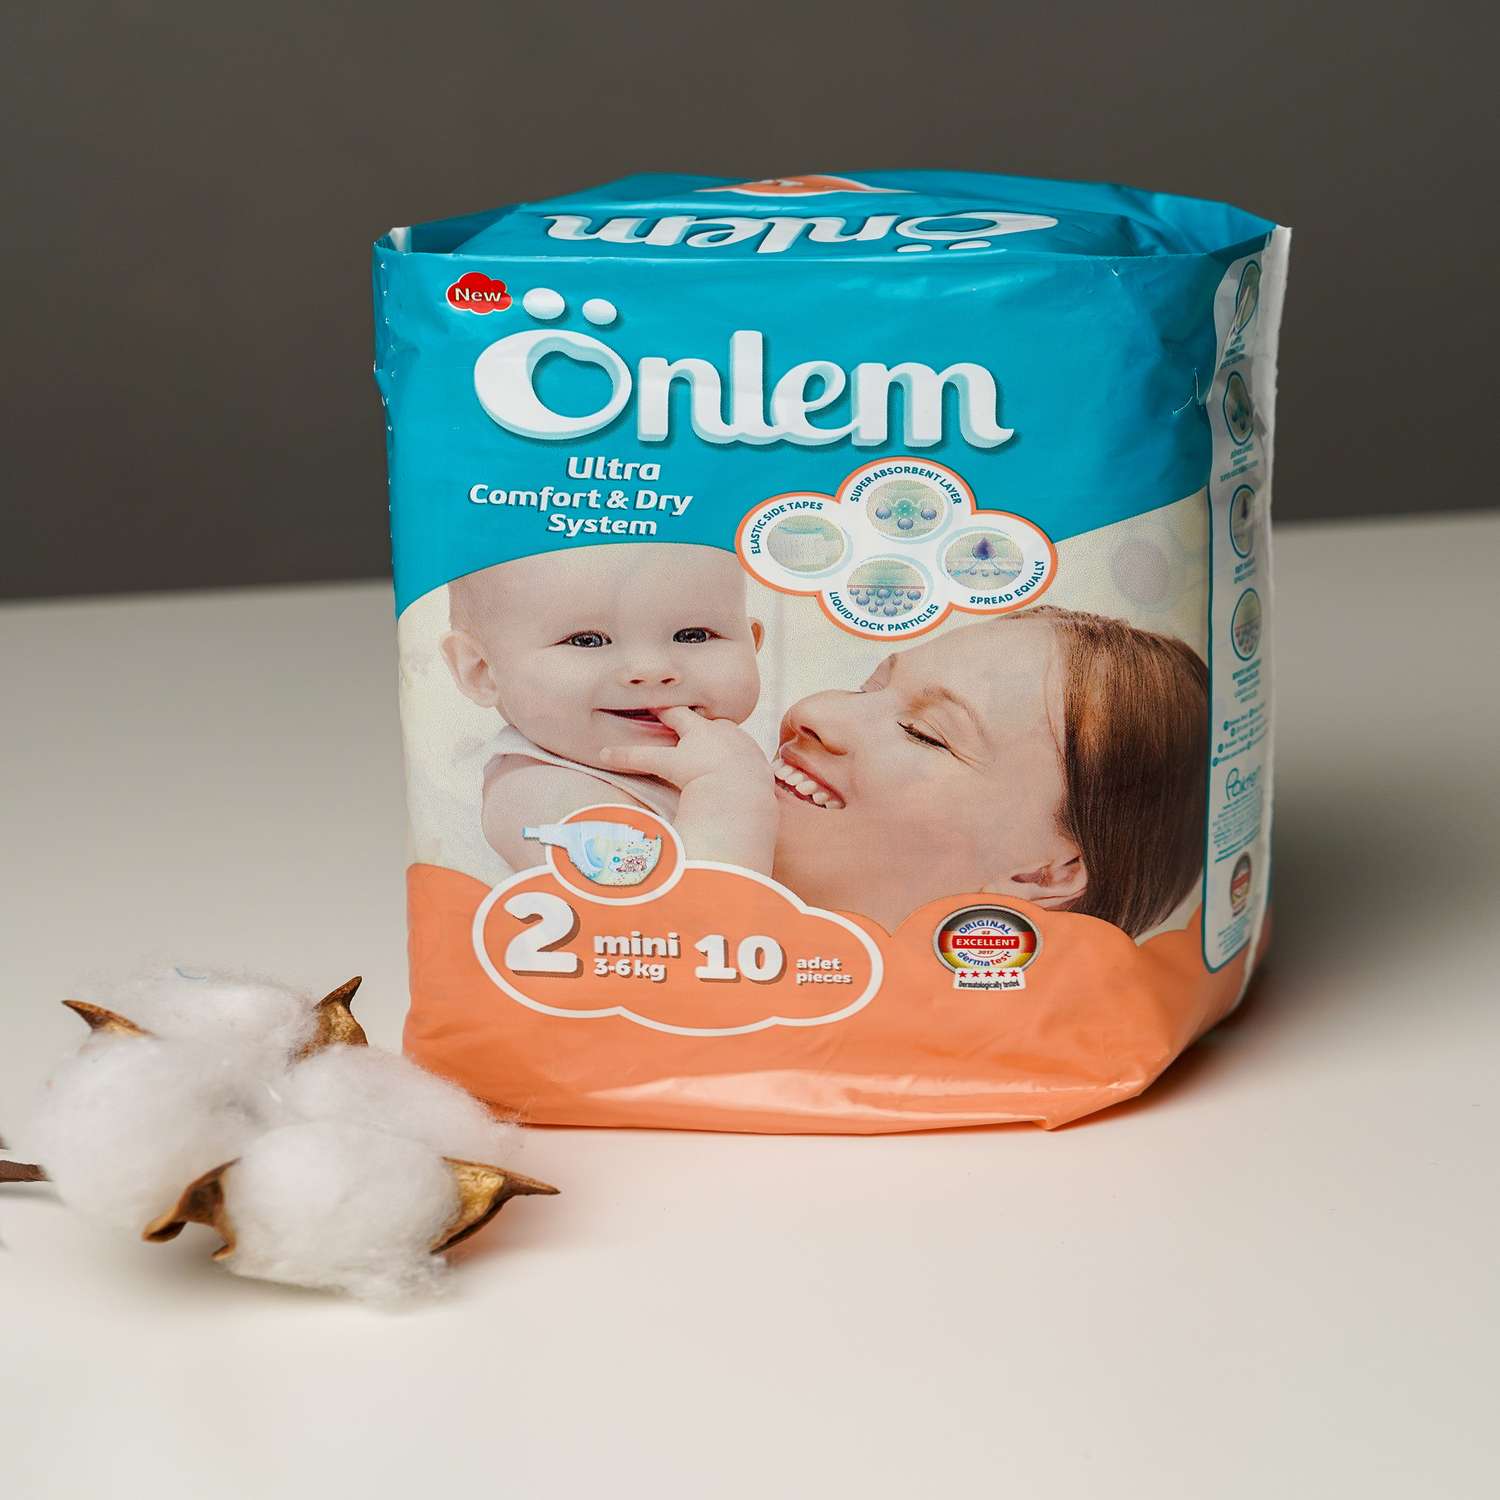 Подгузники Onlem Ultra Comfort Dry System для детей 2 3-6 кг 10 шт - фото 4